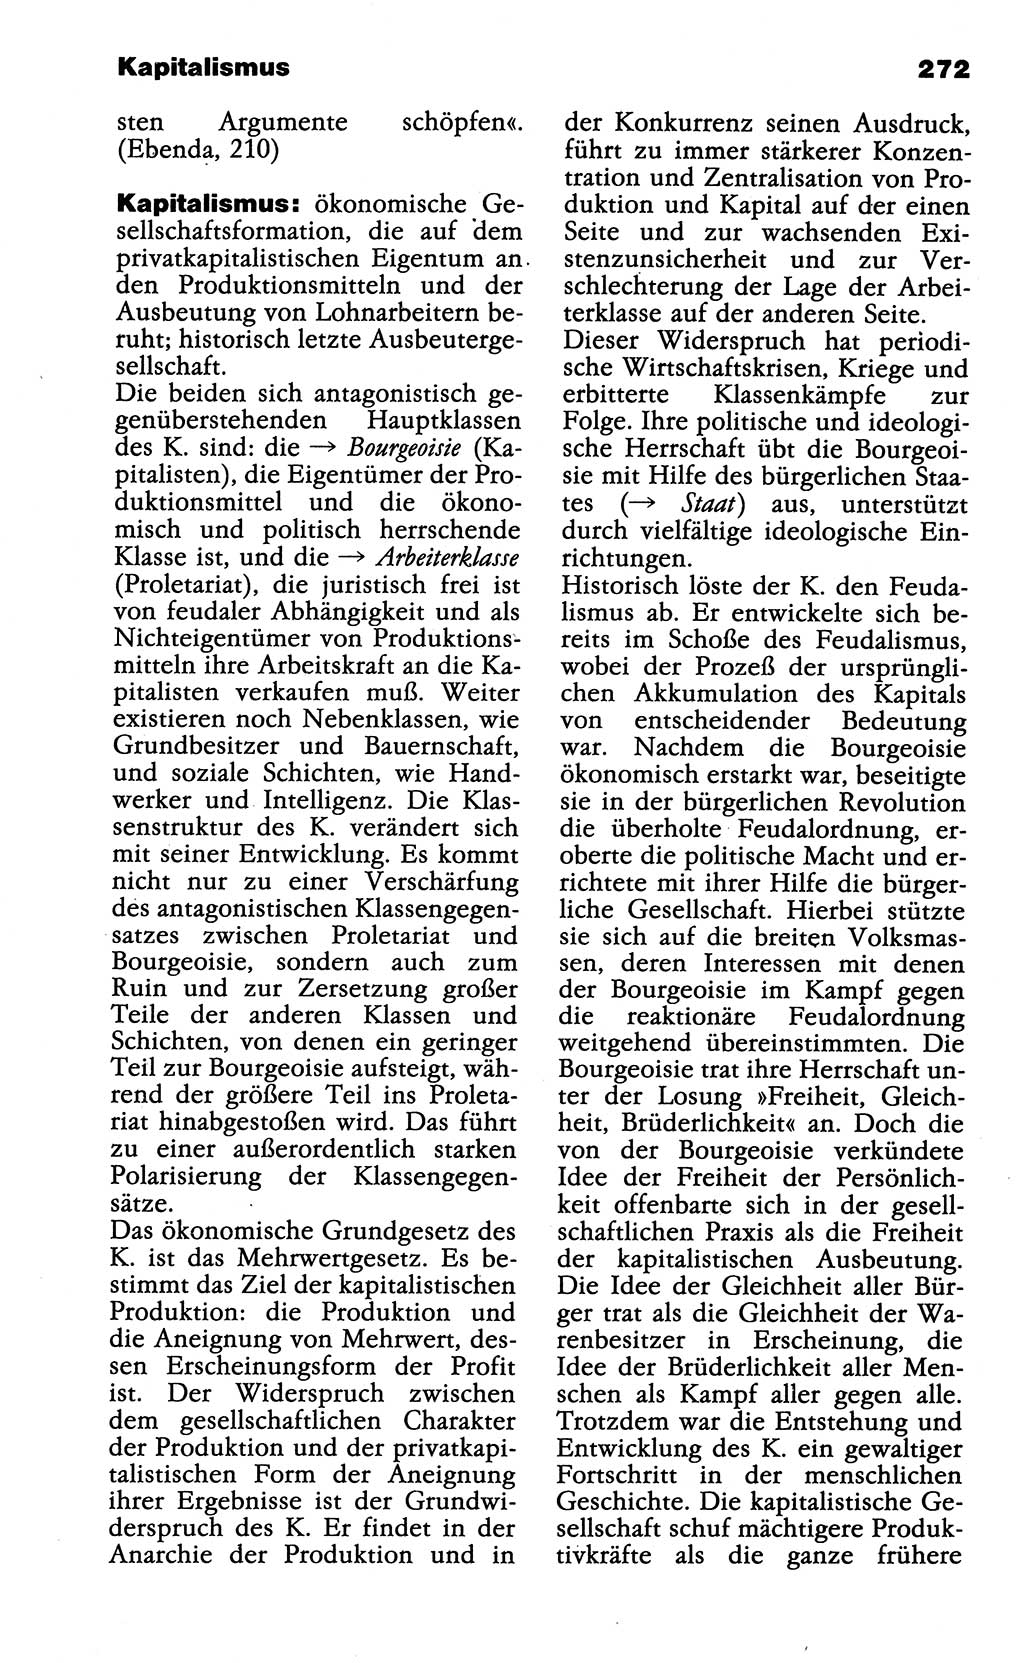 Wörterbuch der marxistisch-leninistischen Philosophie [Deutsche Demokratische Republik (DDR)] 1985, Seite 272 (Wb. ML Phil. DDR 1985, S. 272)